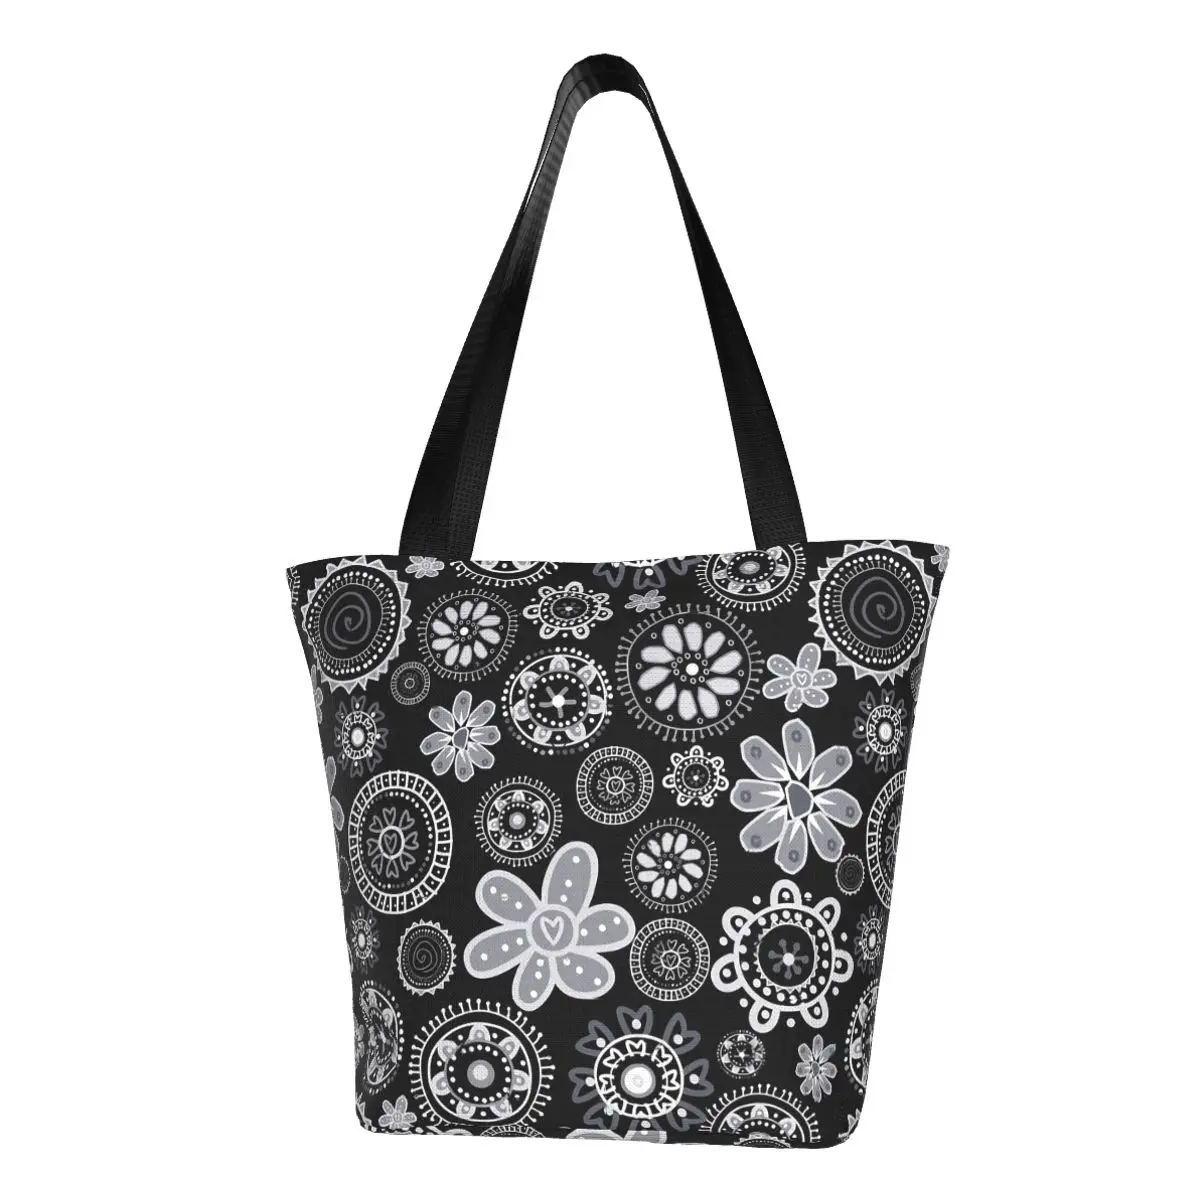 

Абстрактная сумка-шоппер с ярким цветочным рисунком, черные и белые сумки, женская дизайнерская сумка-тоут Y2k, тканевая офисная пляжная сумка